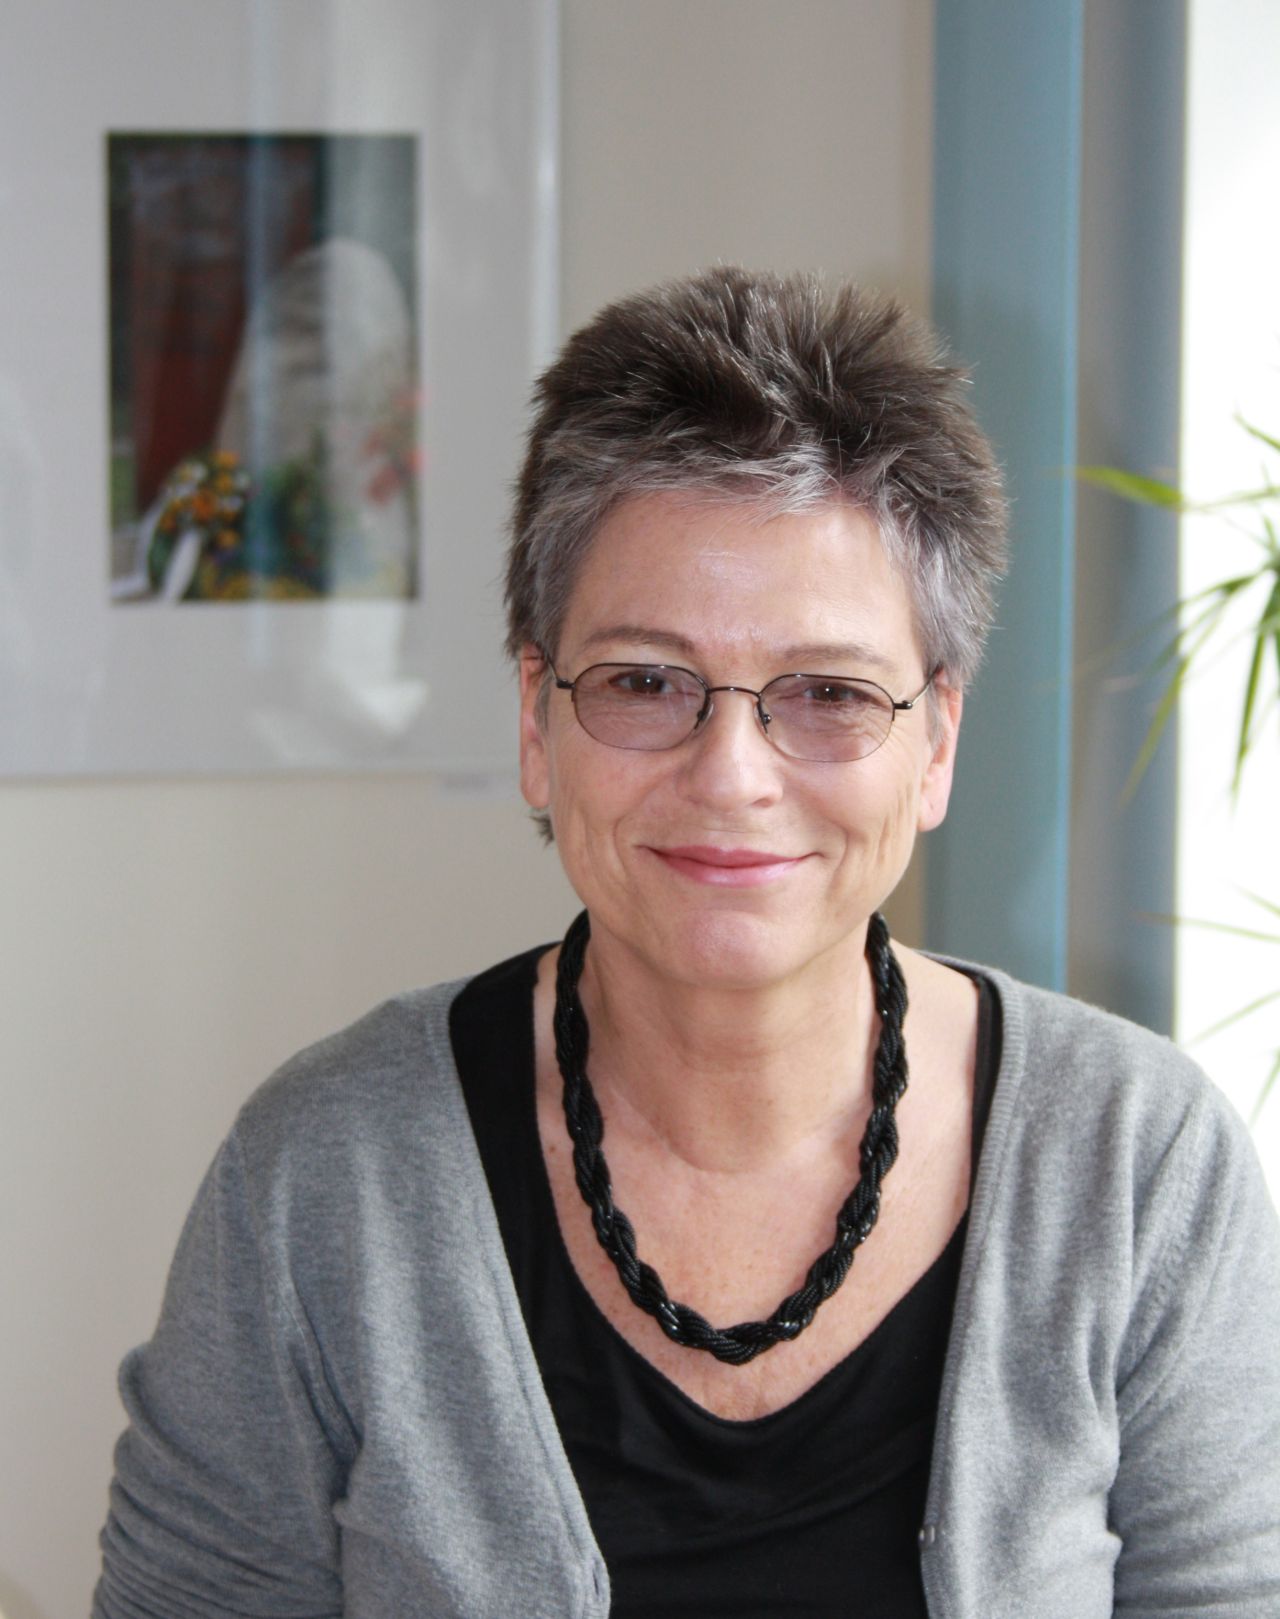 Porträtfotografie der DDR-Bürgerrechtlerin und Politikerin Ulrike Poppe